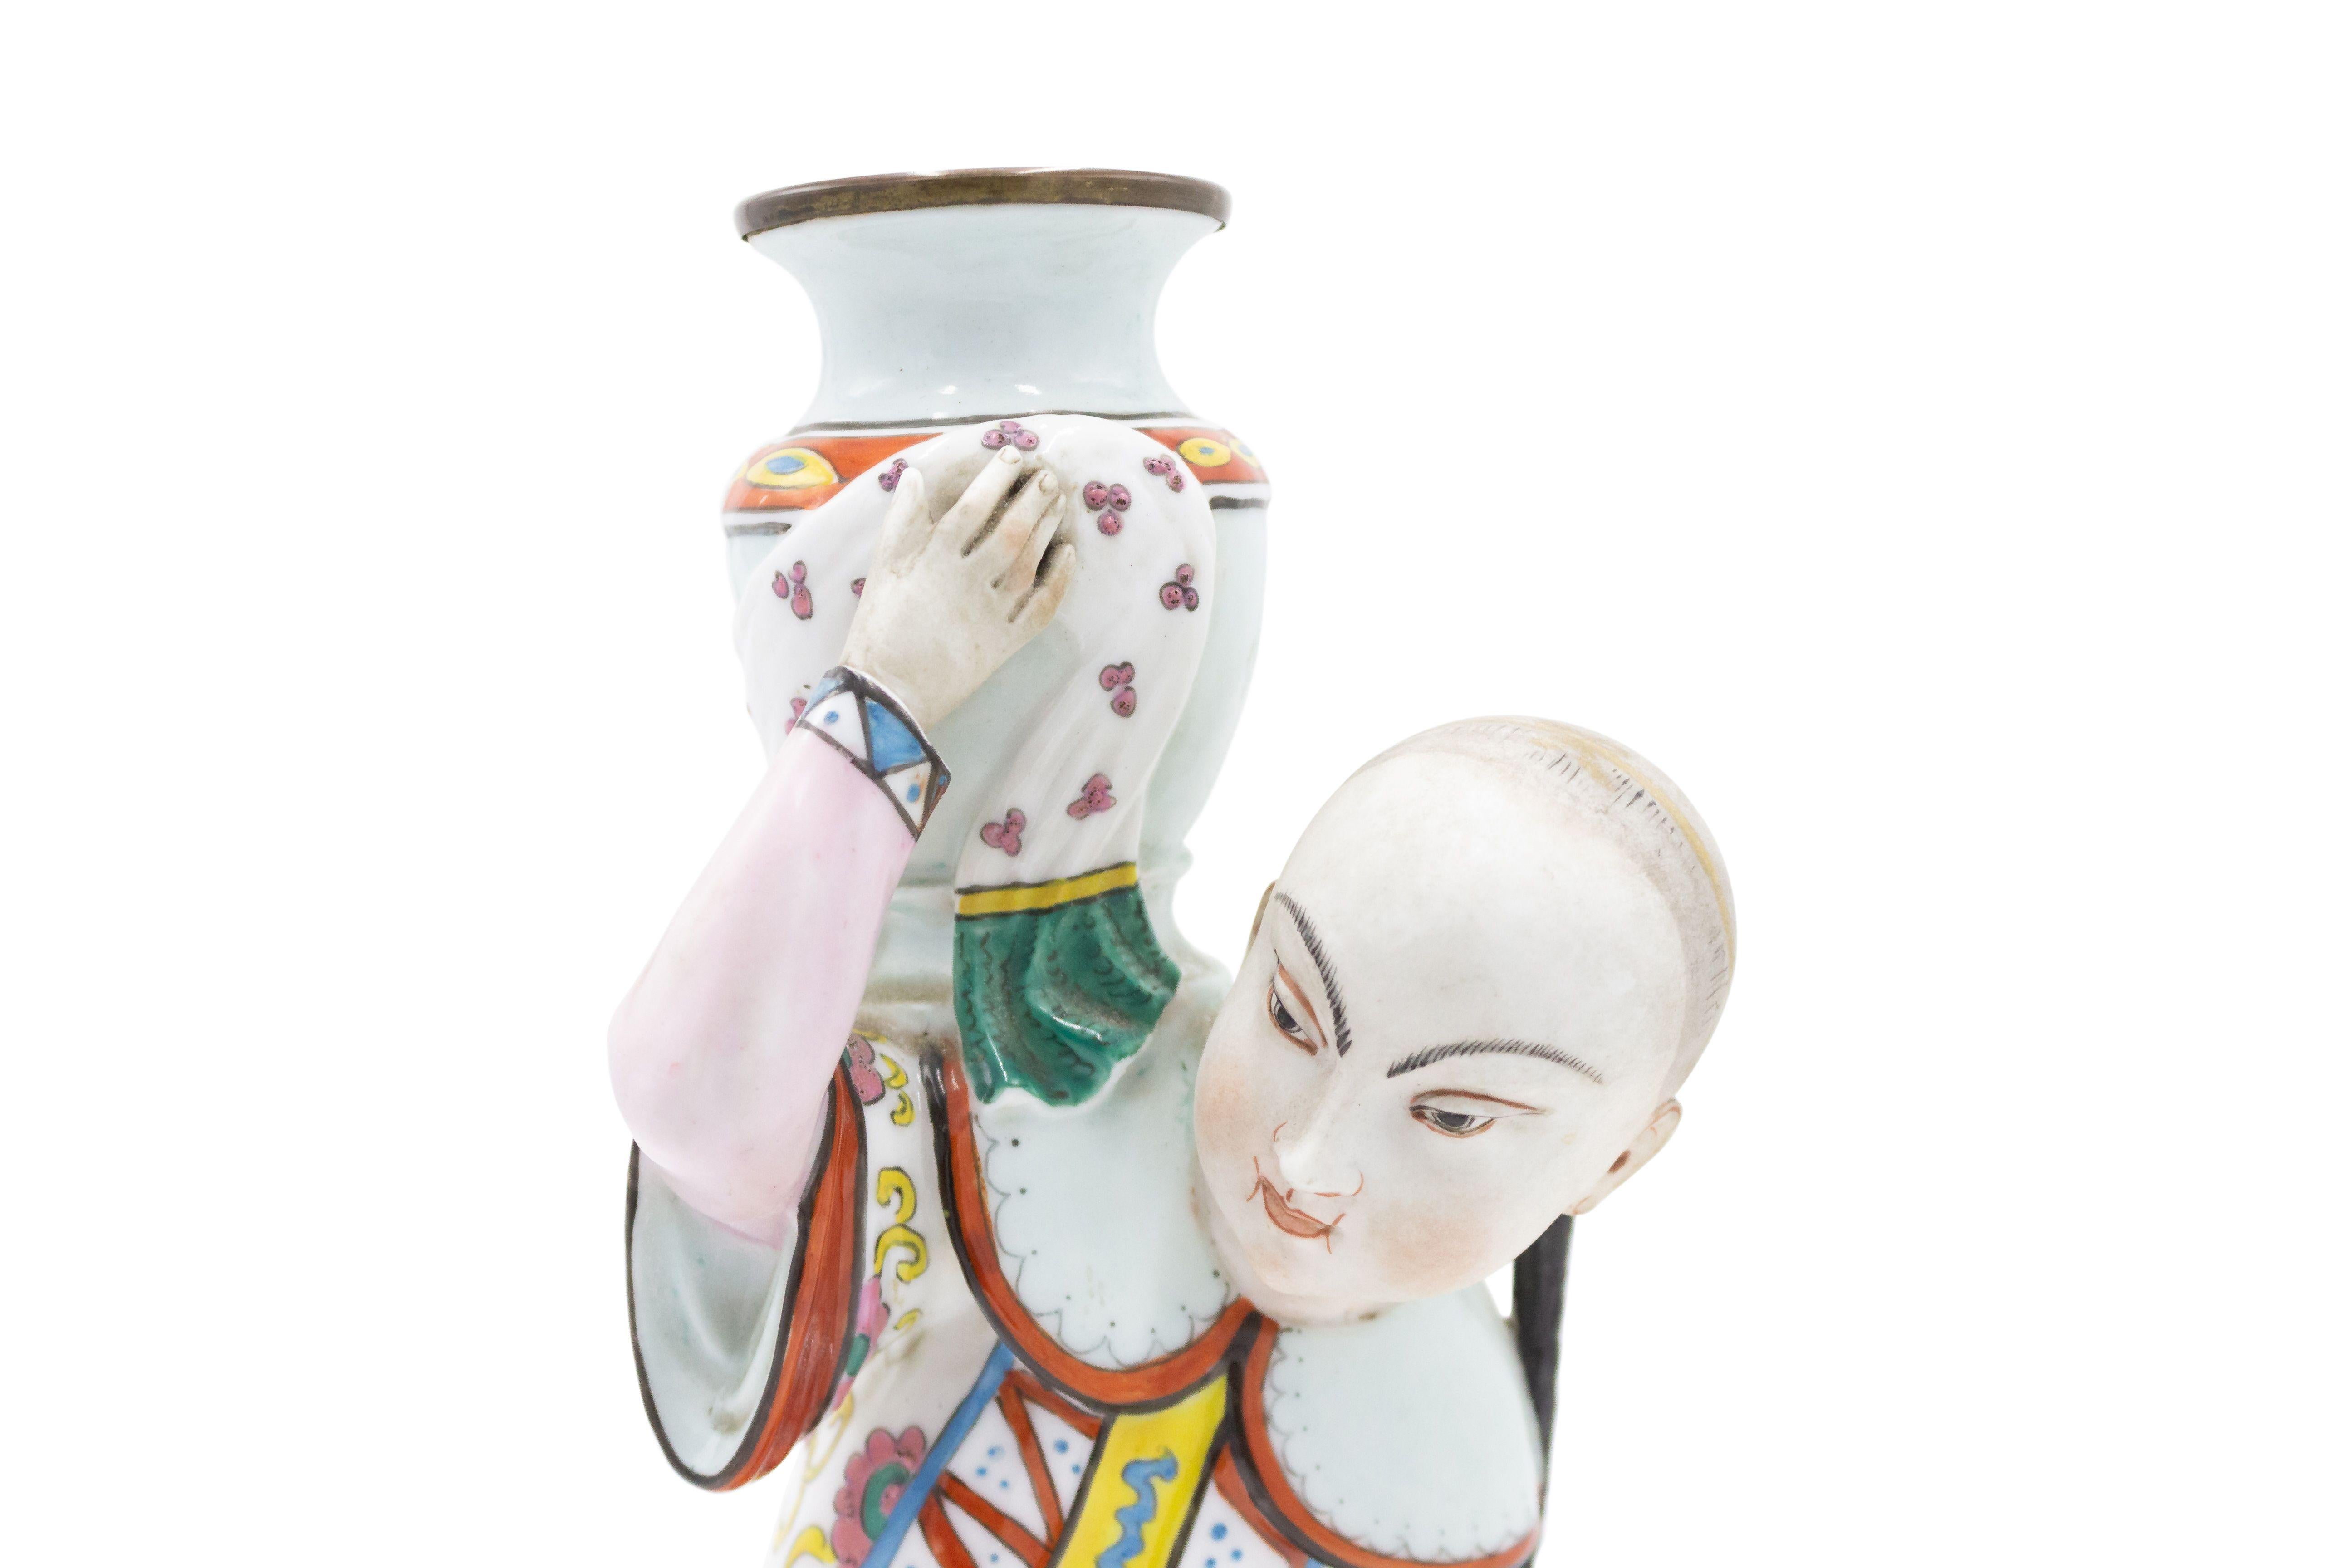 Englischer Porzellan-Kerzenhalter im Regency-Stil (spätes 19. Jahrhundert) mit Ormolu-Montage in Form von knienden chinesischen Figuren, die eine Urne halten.
 